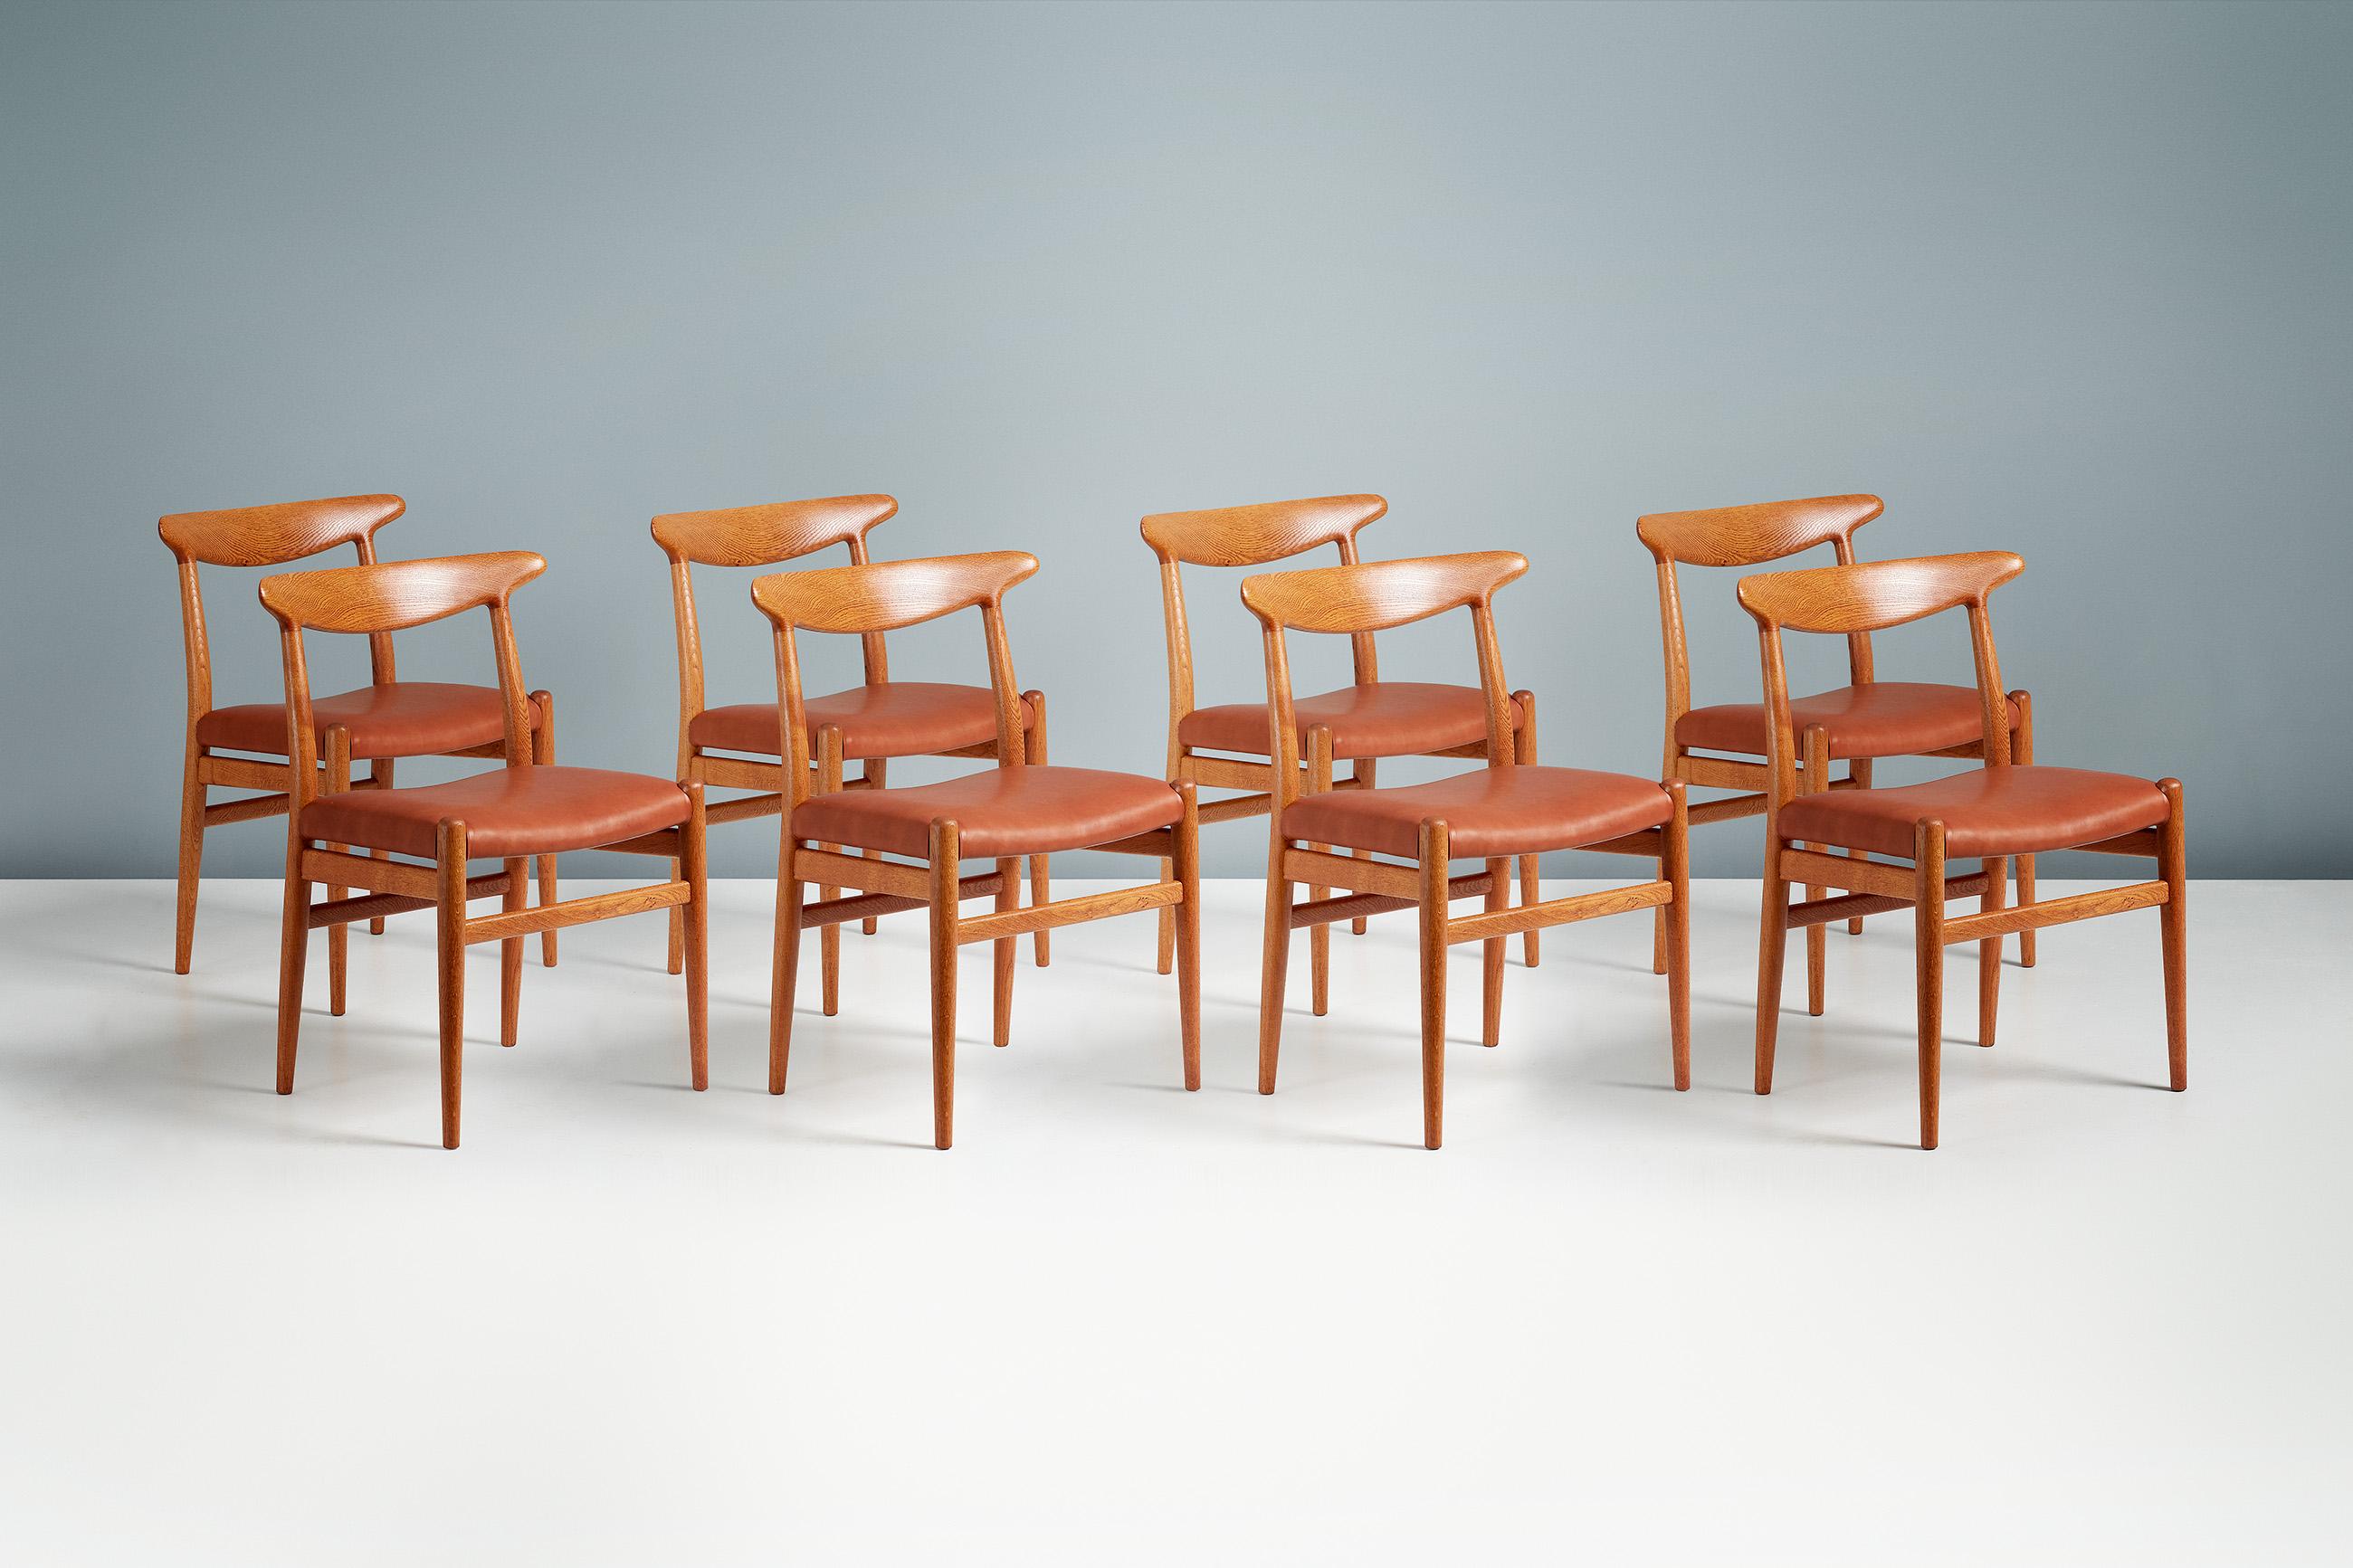 Hans Wegner

W2 Esszimmerstühle 

Satz von 8 Esszimmerstühlen Modell W2, entworfen und hergestellt von C. M. Madsens in Dänemark im Jahr 1953. Patinierte, geölte Ok-Rahmen mit Sitzbezügen aus cognacbraunem Anilinleder.